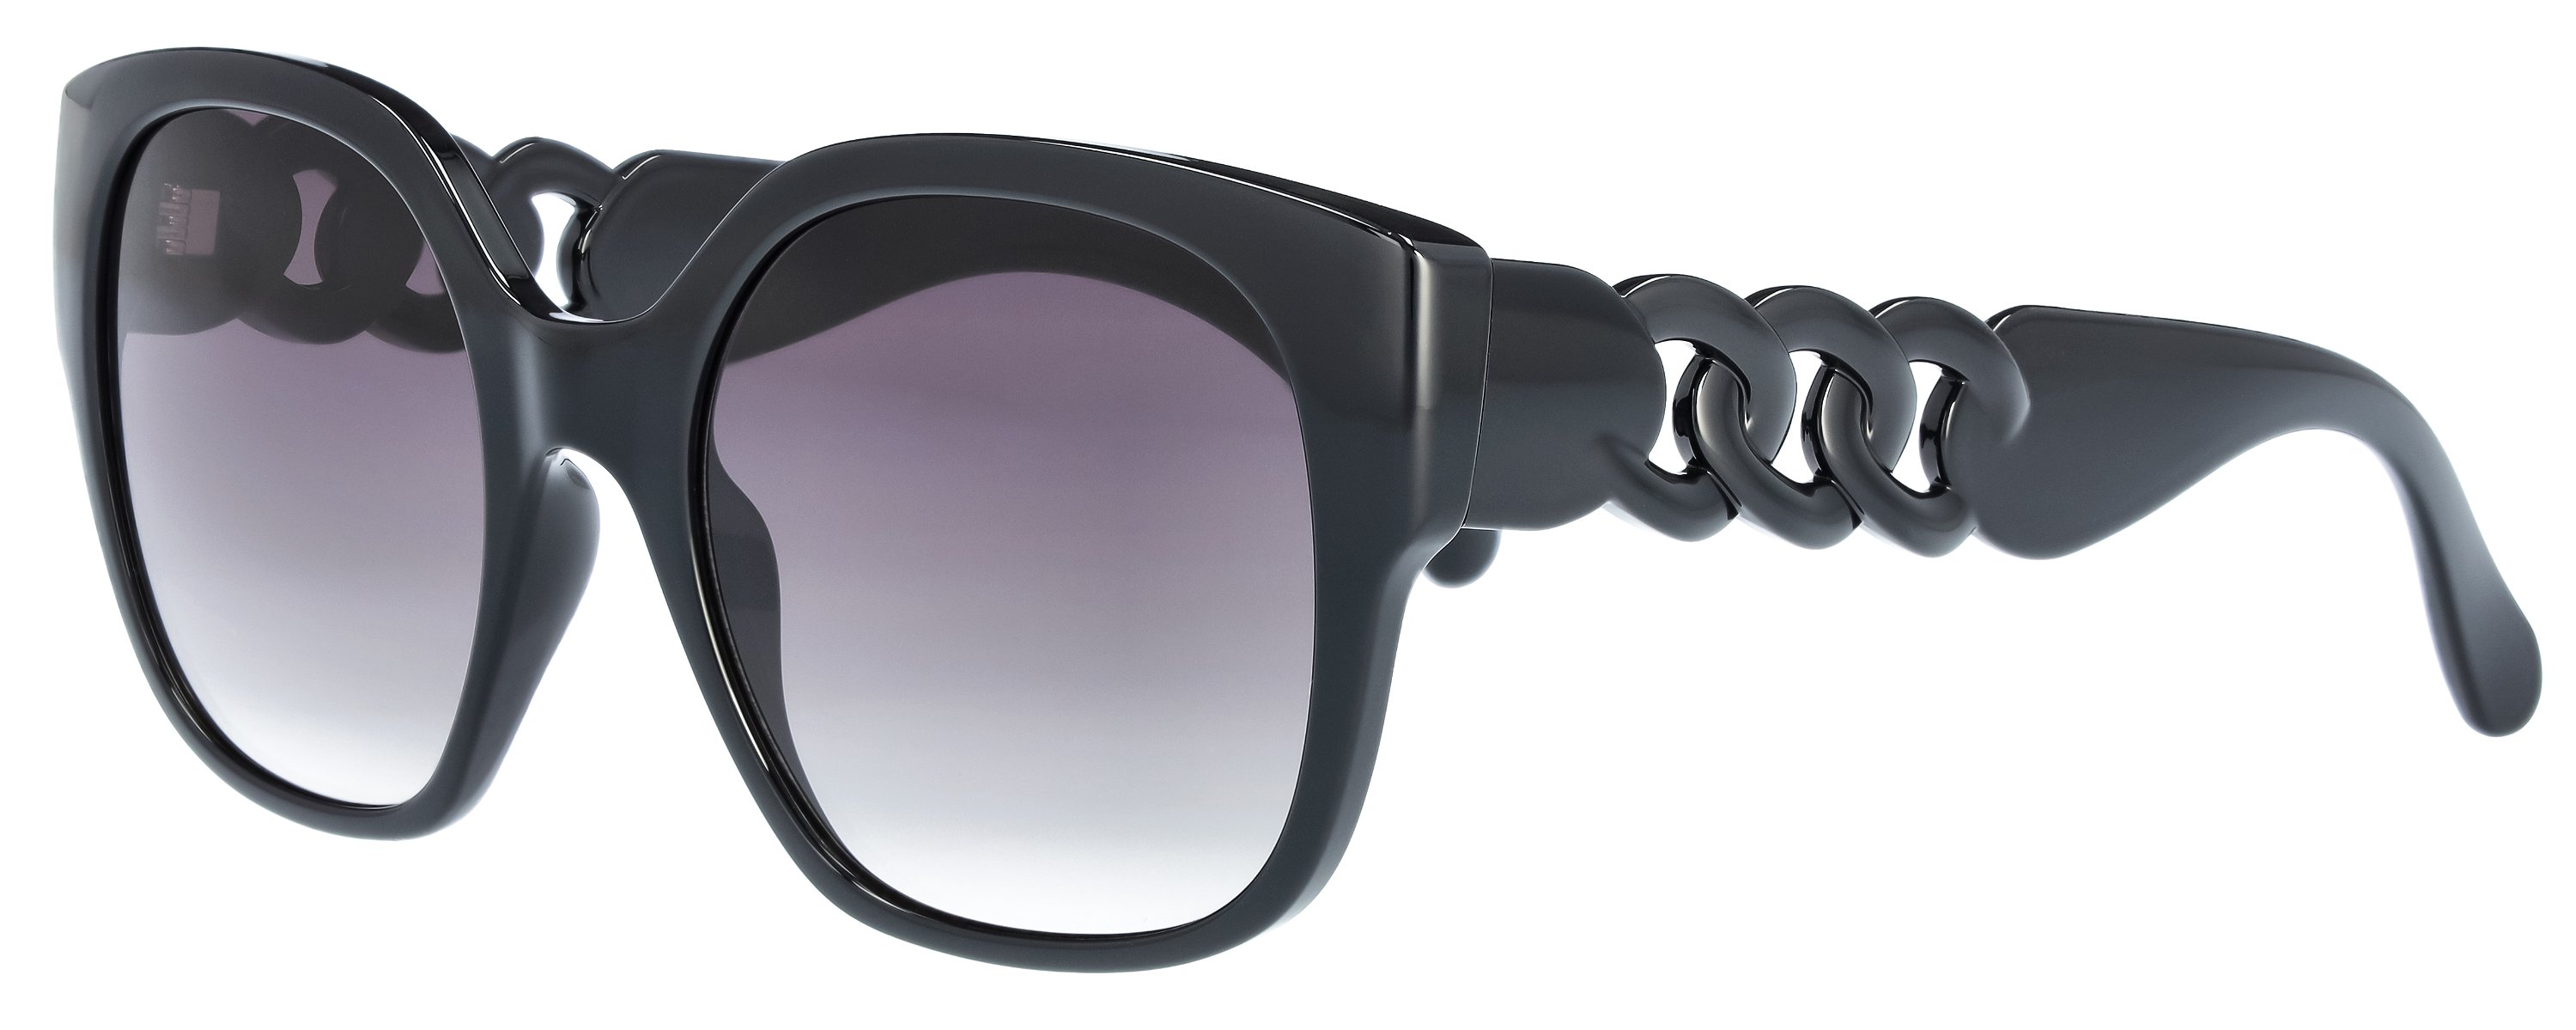 Das Bild zeigt die Sonnenbrille für  Damen  721071 in schwarz.